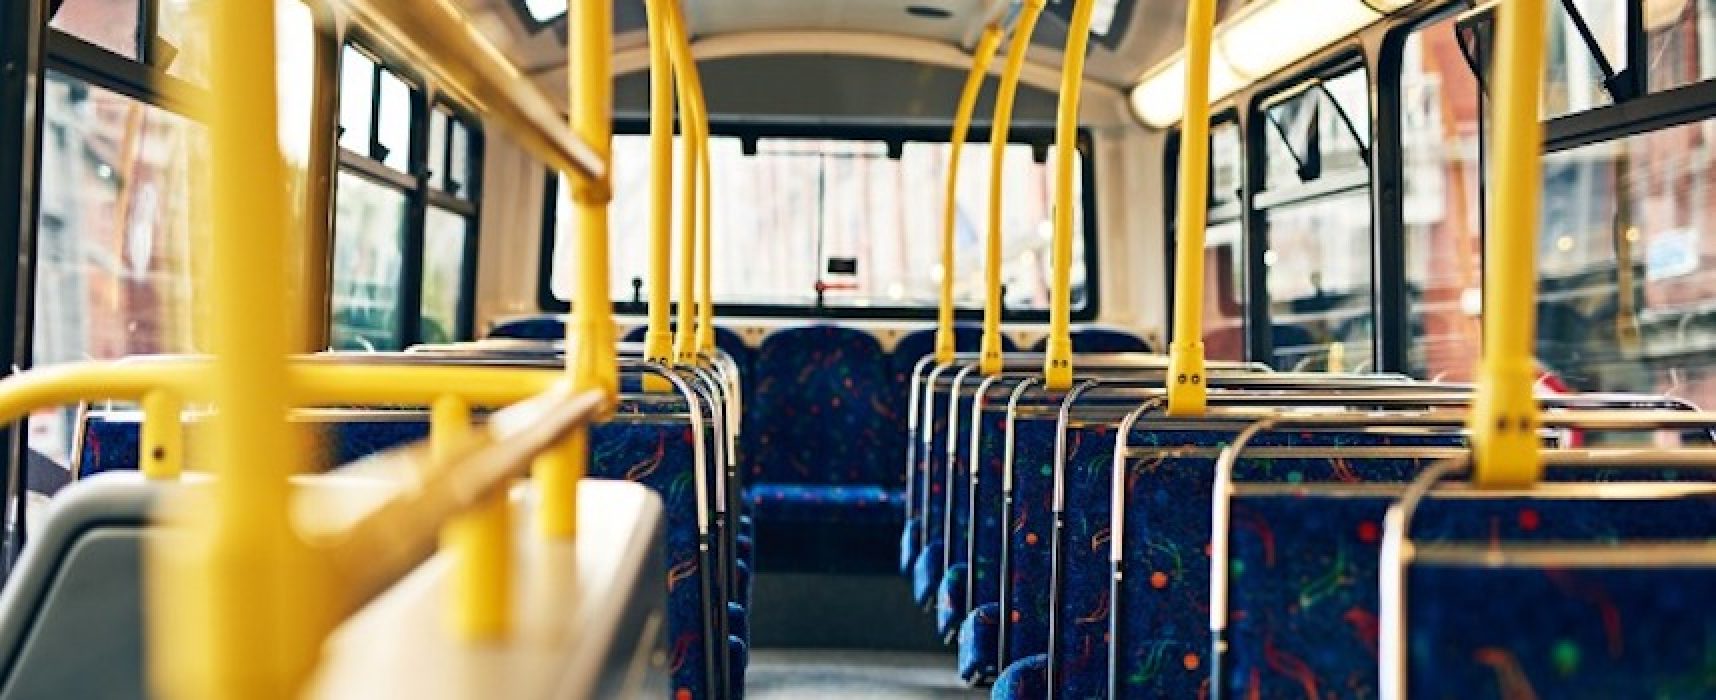 Riparte il servizio di trasporto pubblico per studenti: linee e orari